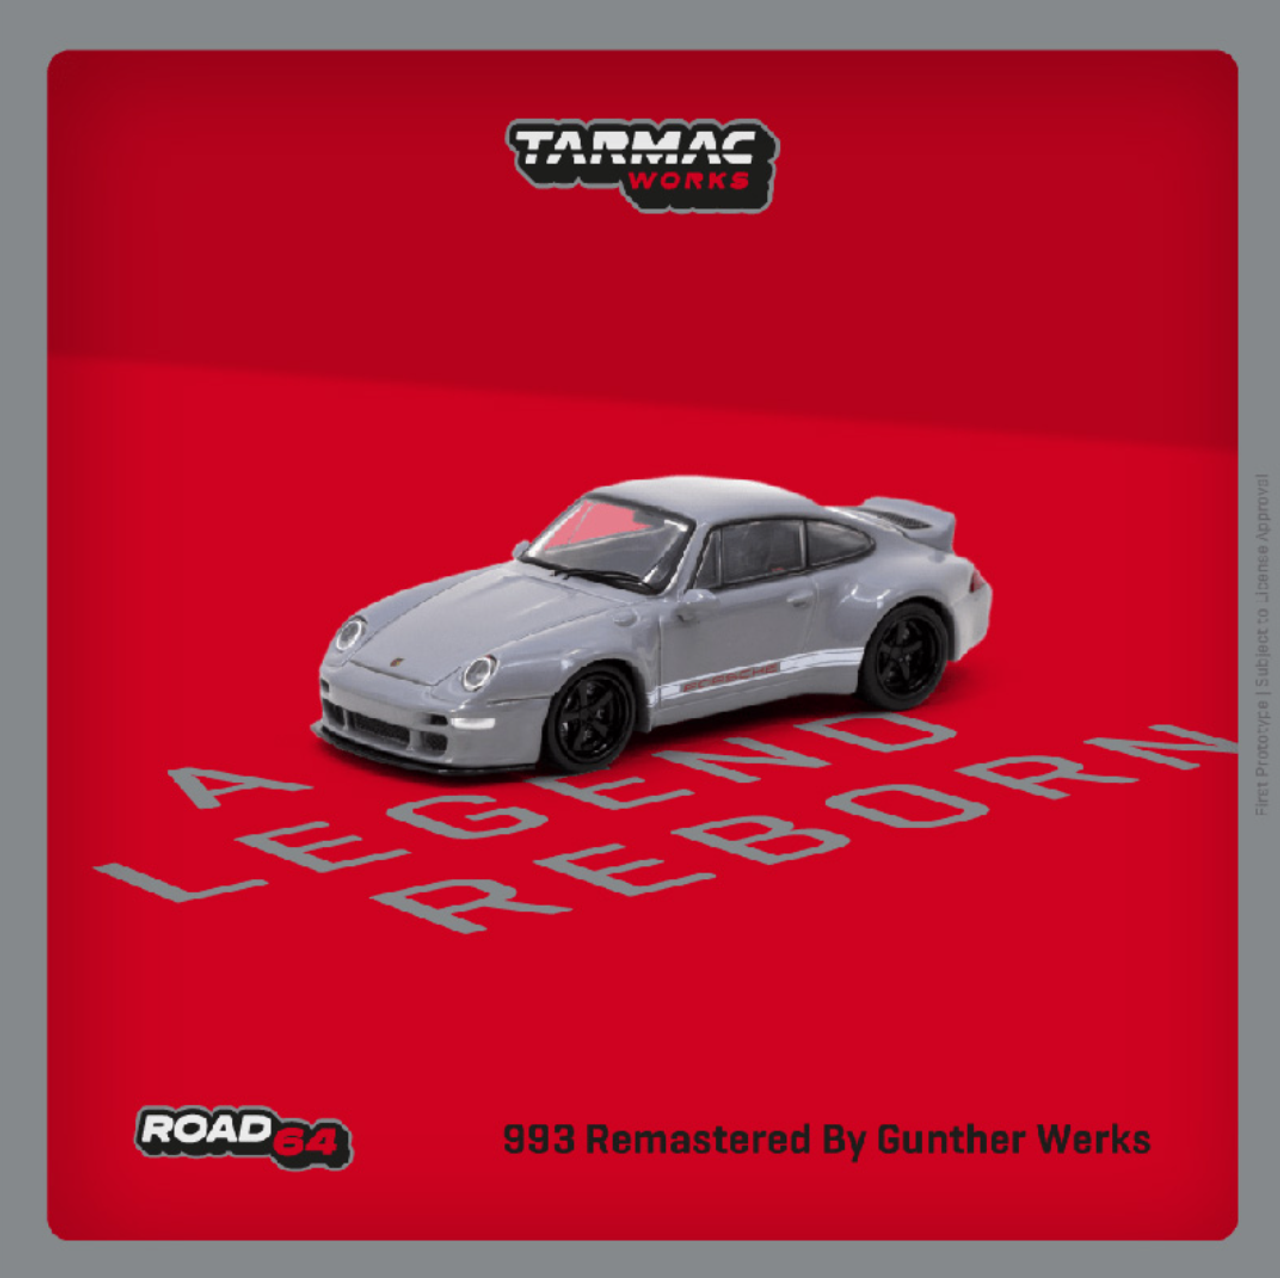 1/64 Tarmac Works Porsche 911 993 Remastered By Gunther Werks (Grey) Diecast Car Model